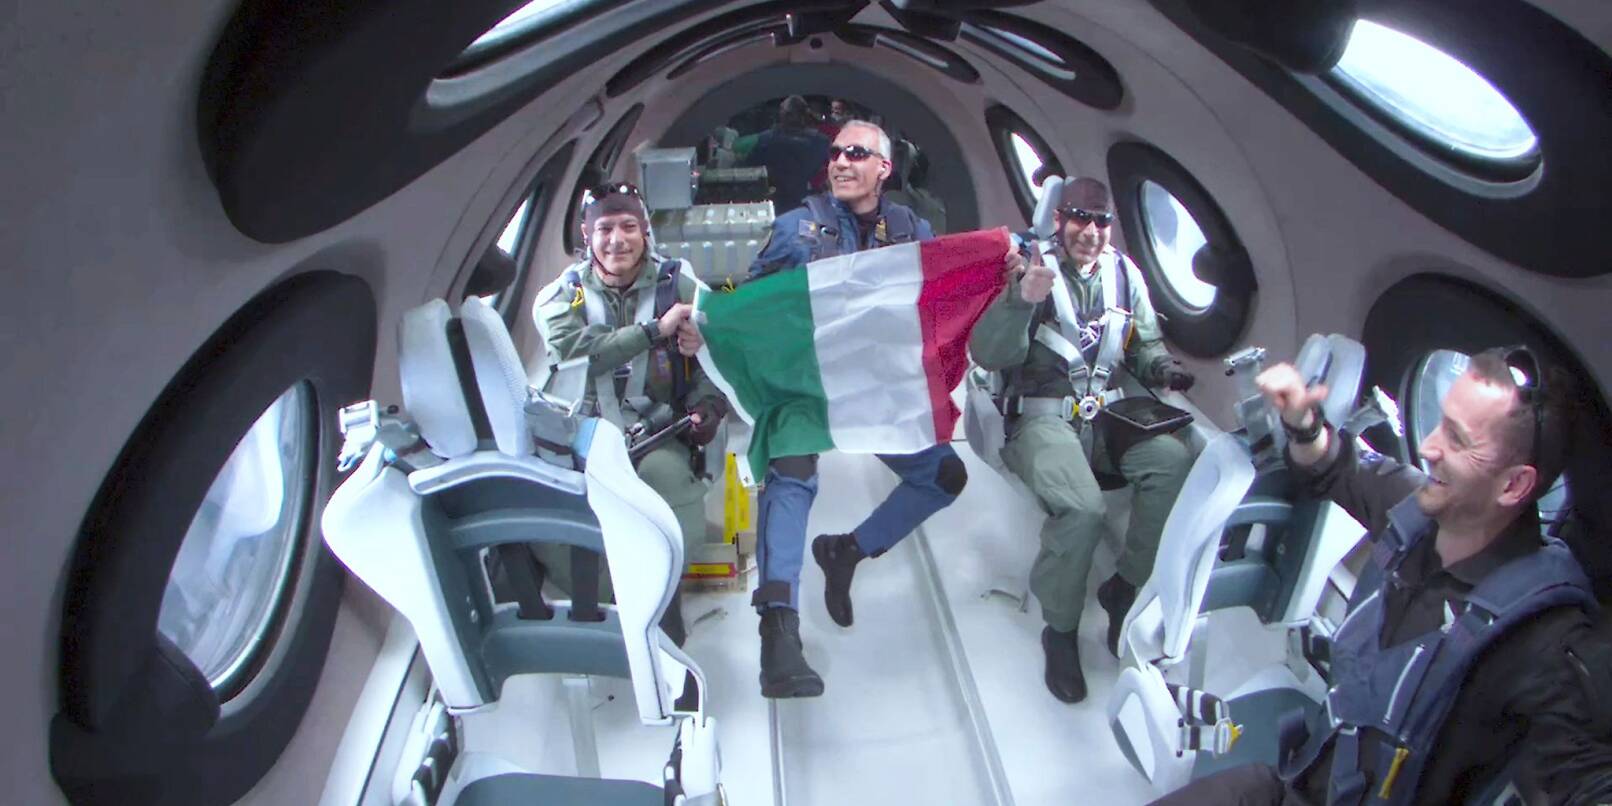 Walter Villadei (M), Wissenschaftler der italienischen Luftwaffe, hält eine italienische Fahne, während er und andere italienische Forscher einige Momente der Schwerelosigkeit an Bord des Raumflugzeugs von Virgin Galactic erleben.